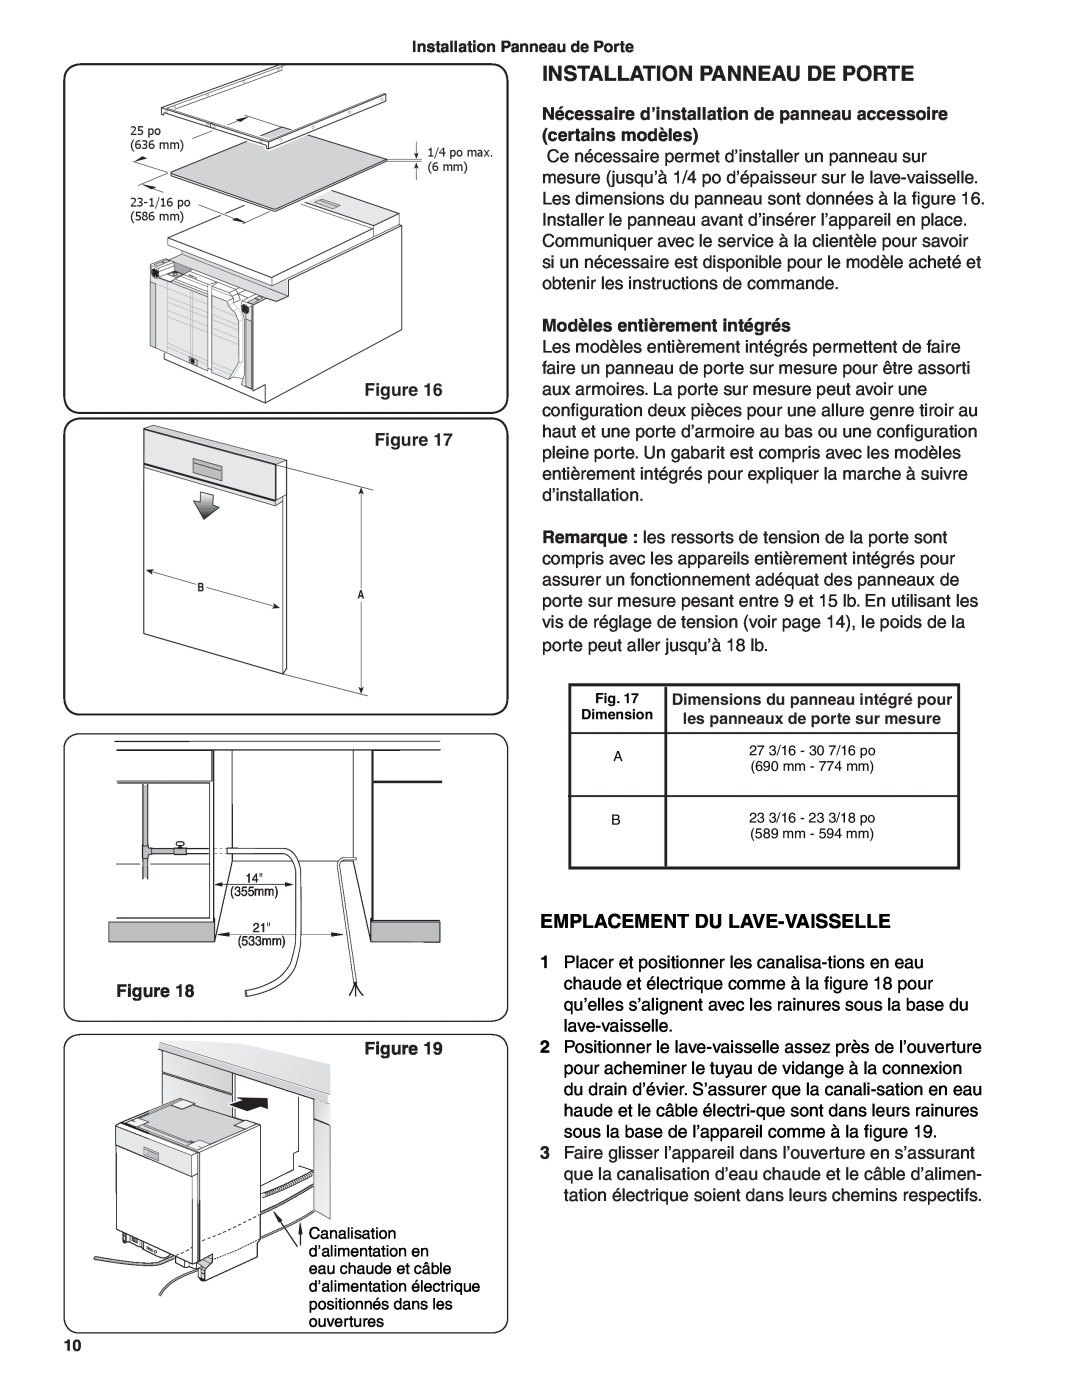 Bosch Appliances BSH Dishwasher important safety instructions Installation Panneau De Porte, Emplacement Du Lave-Vaisselle 